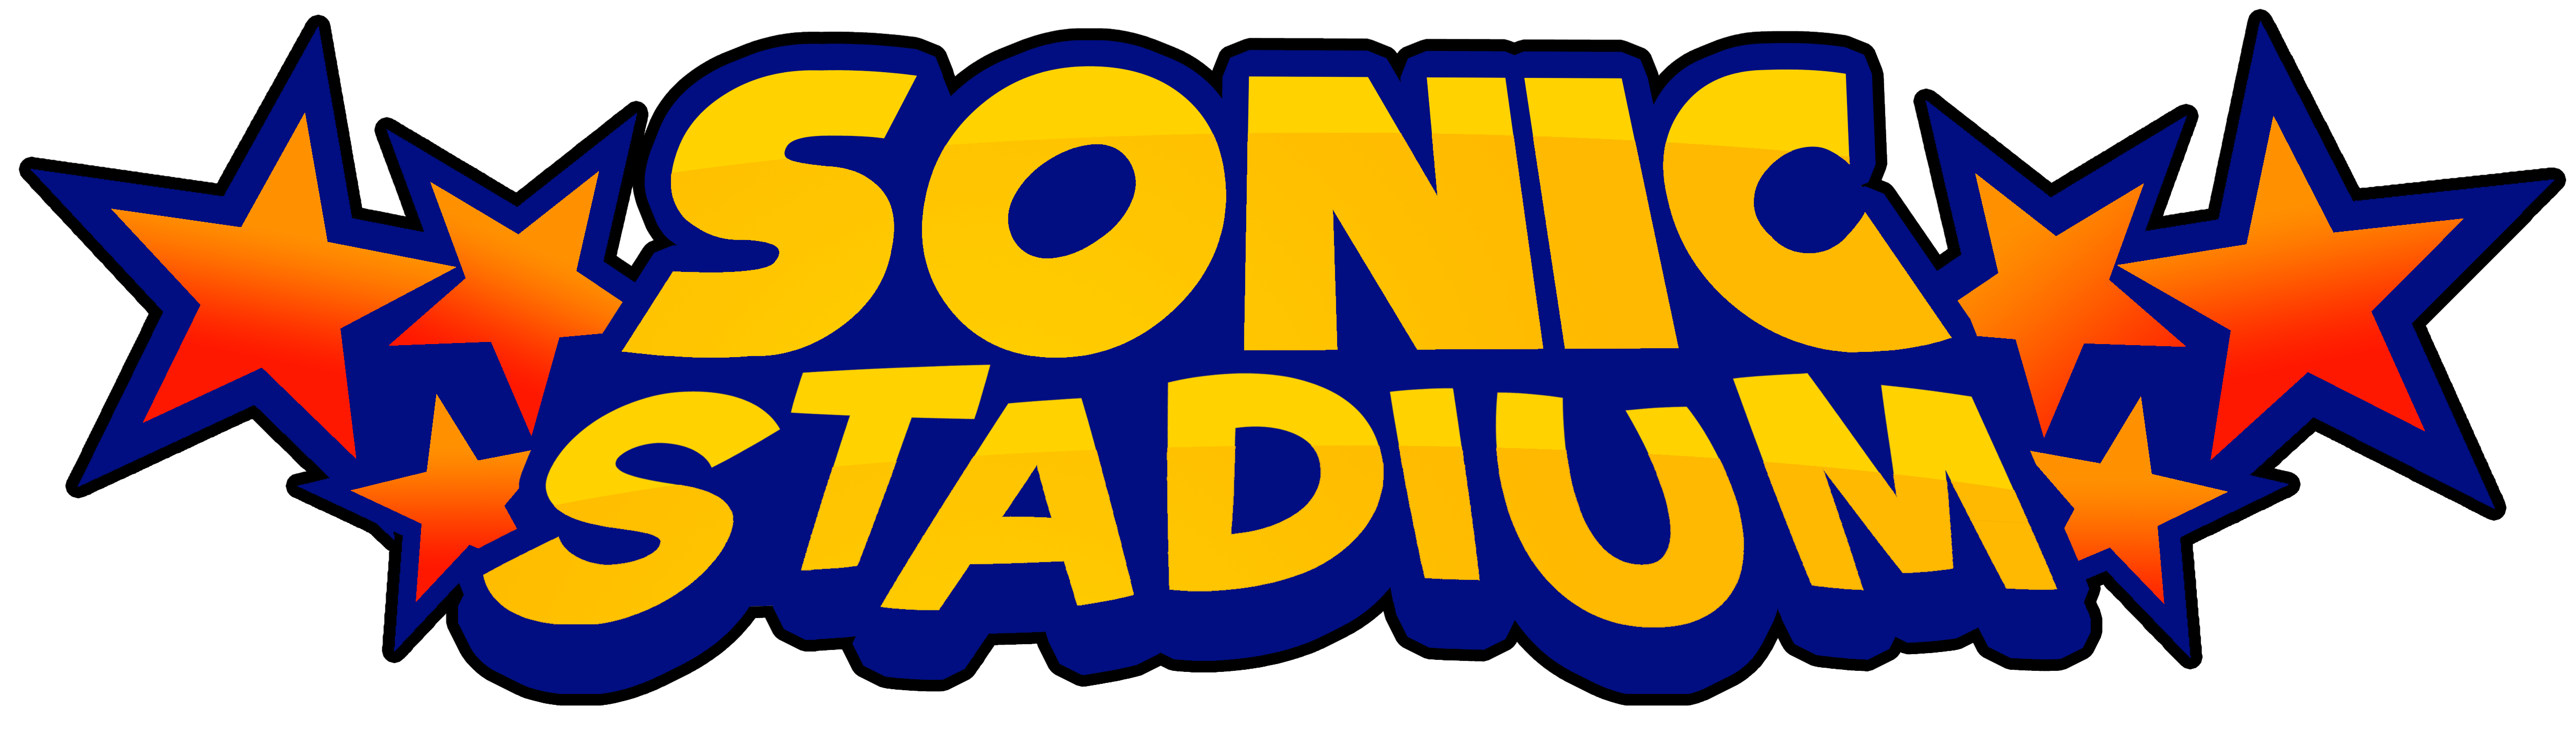 Sonic Stadium